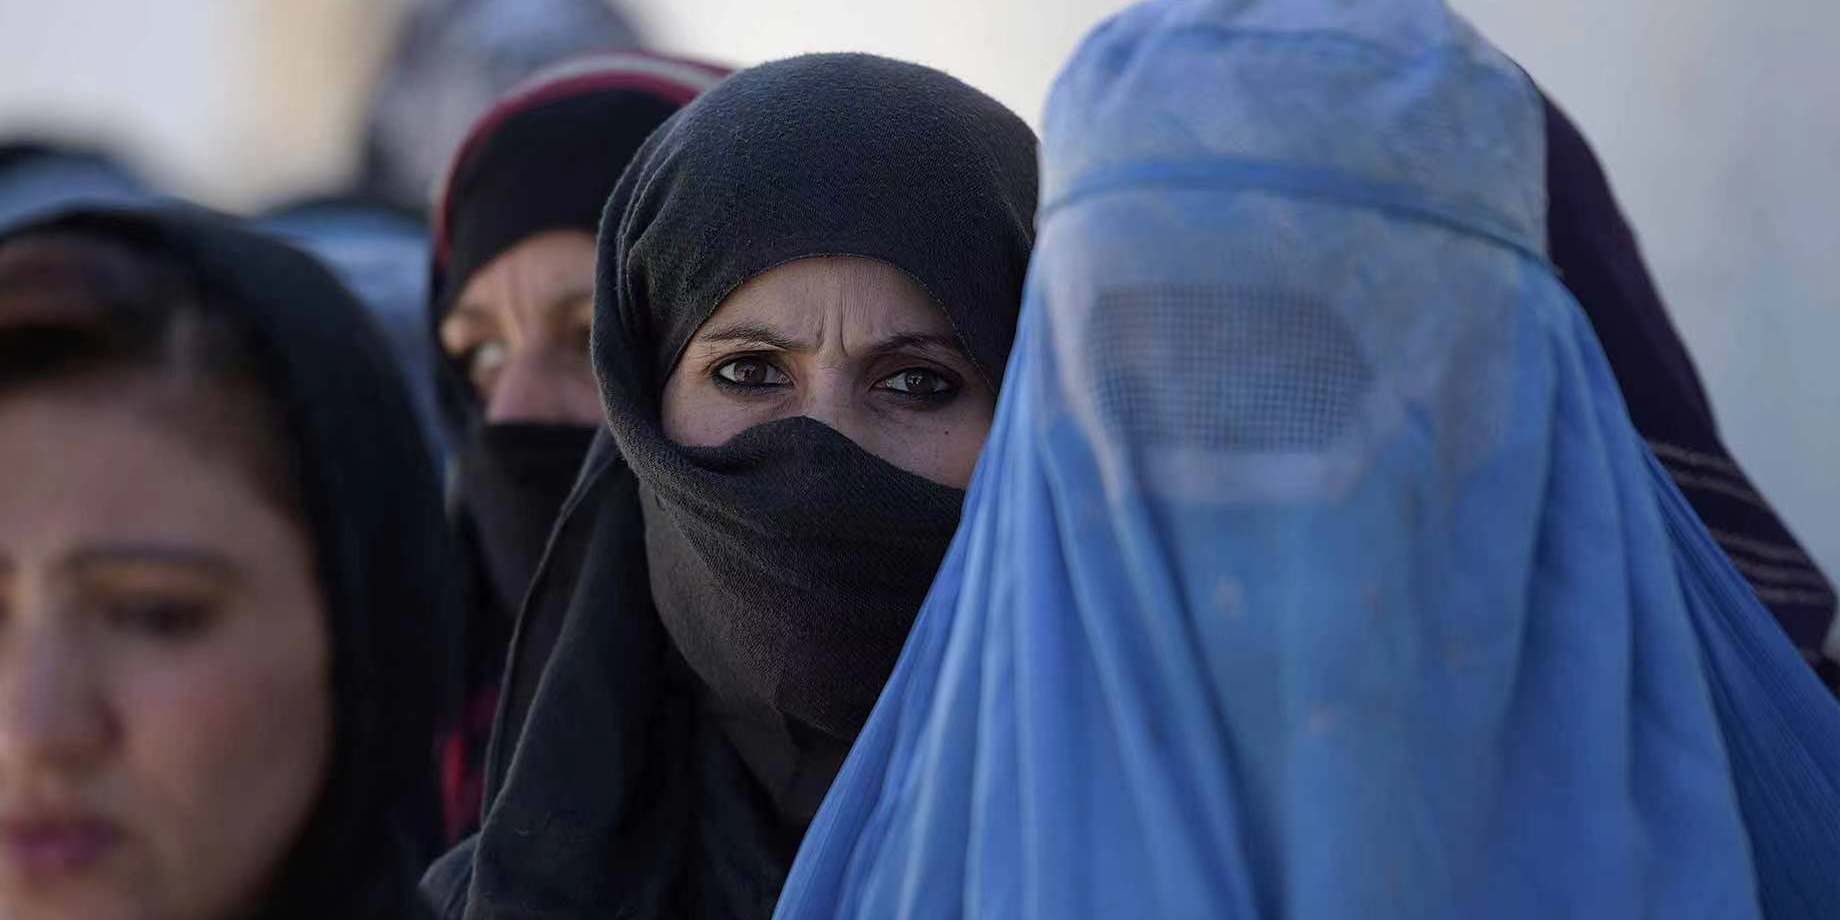 阿富汗女性生存现状图片